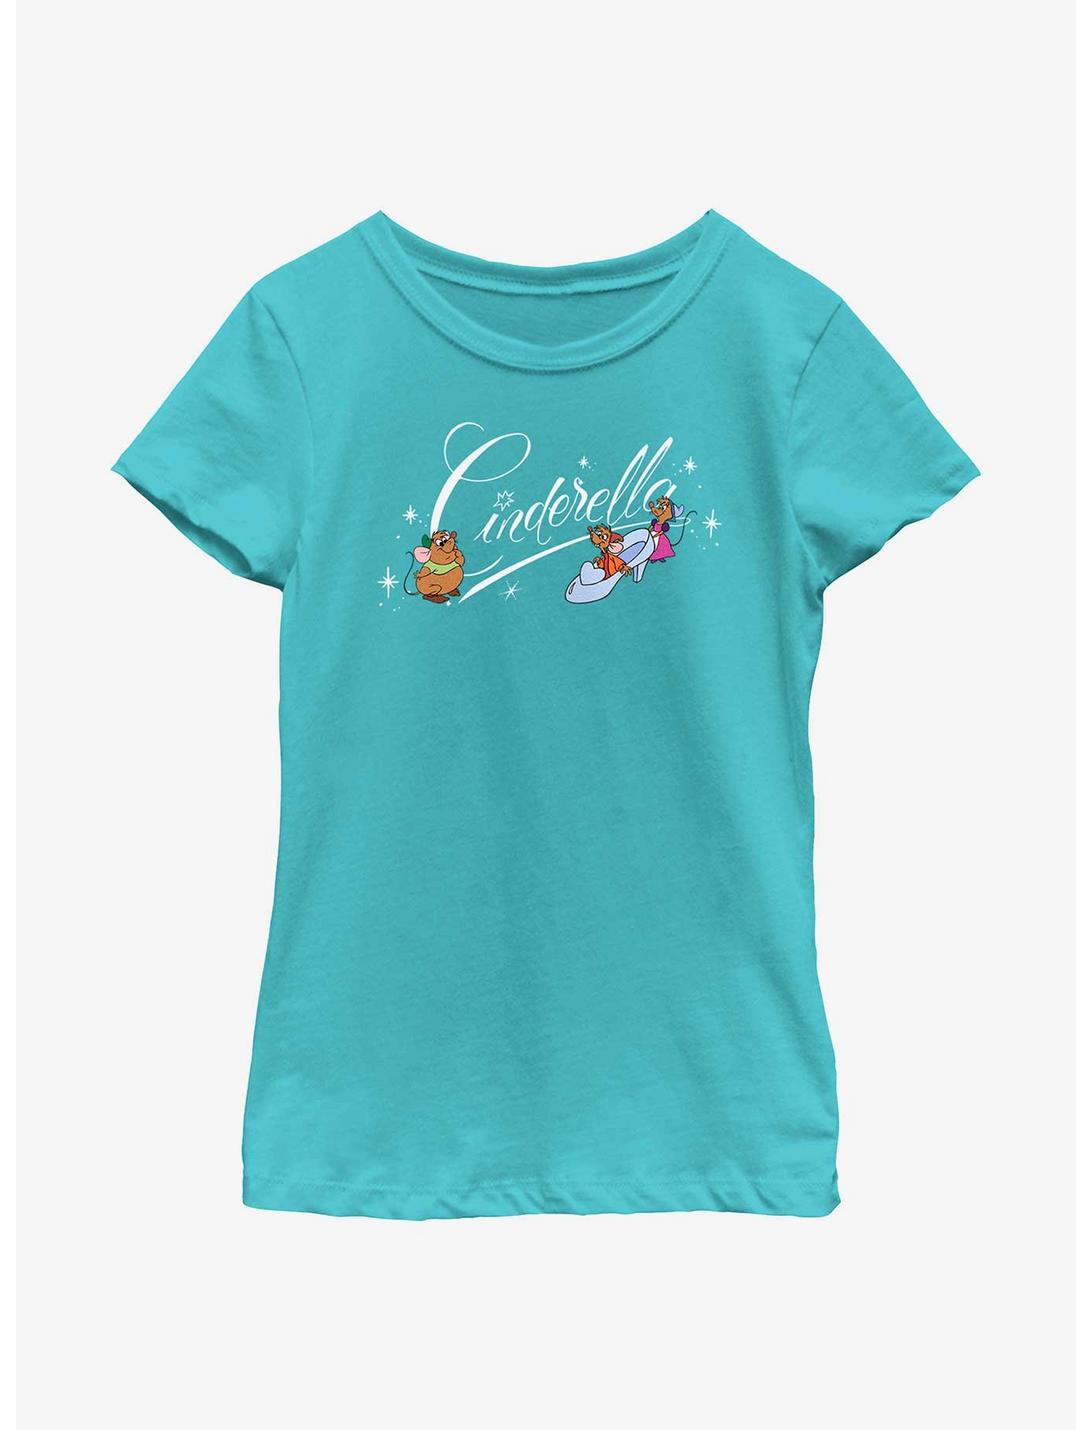 Disney Cinderella Mice Logo Youth Girls T-Shirt, TAHI BLUE, hi-res